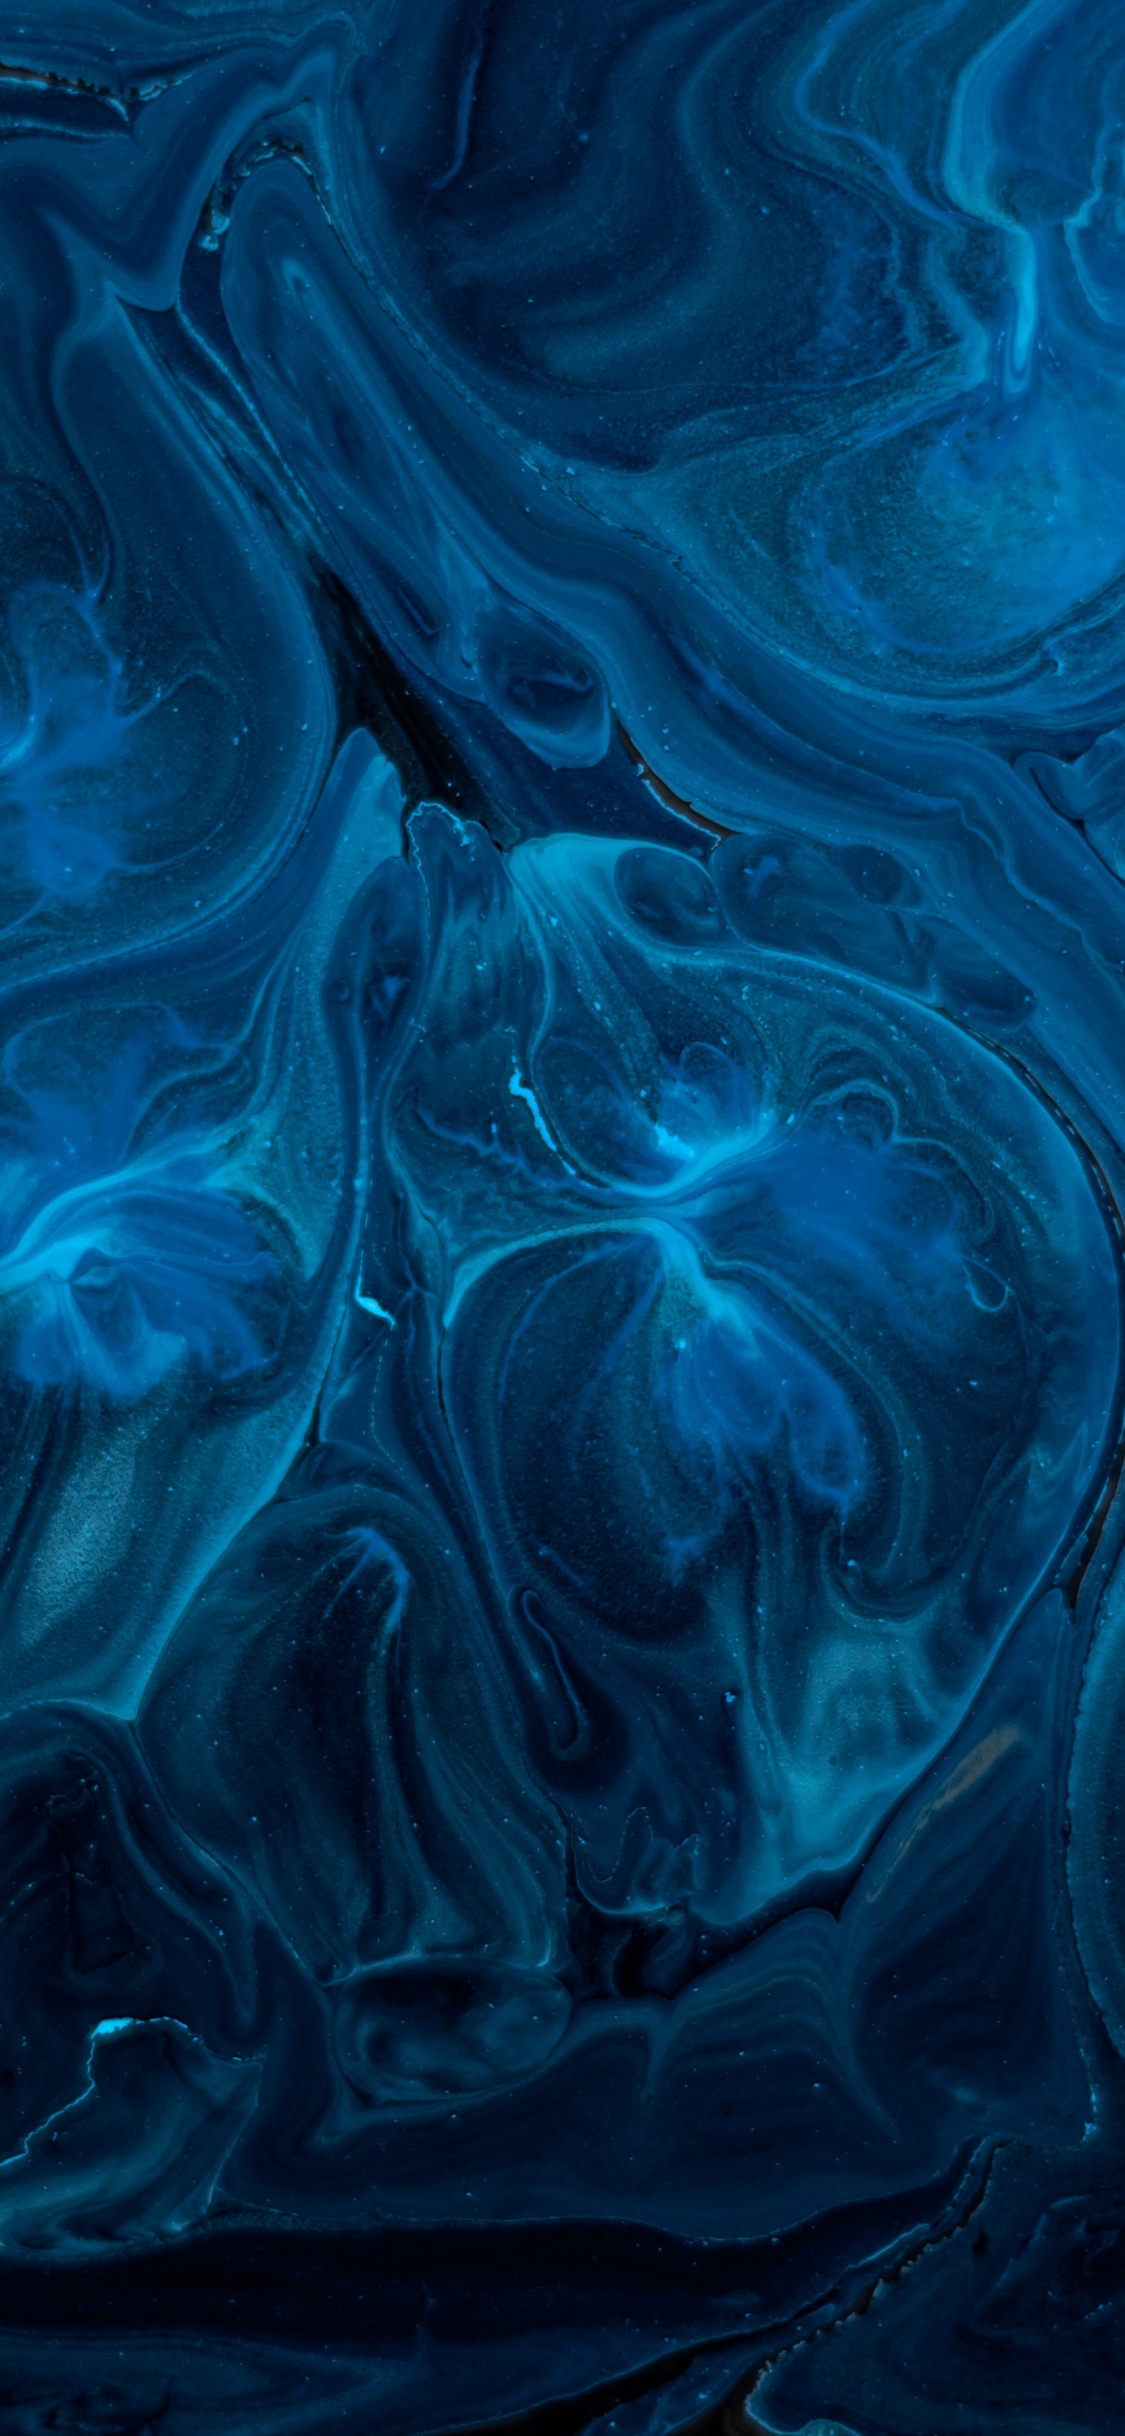 Pintura Abstracta Azul y Negra. Wallpaper in 1125x2436 Resolution